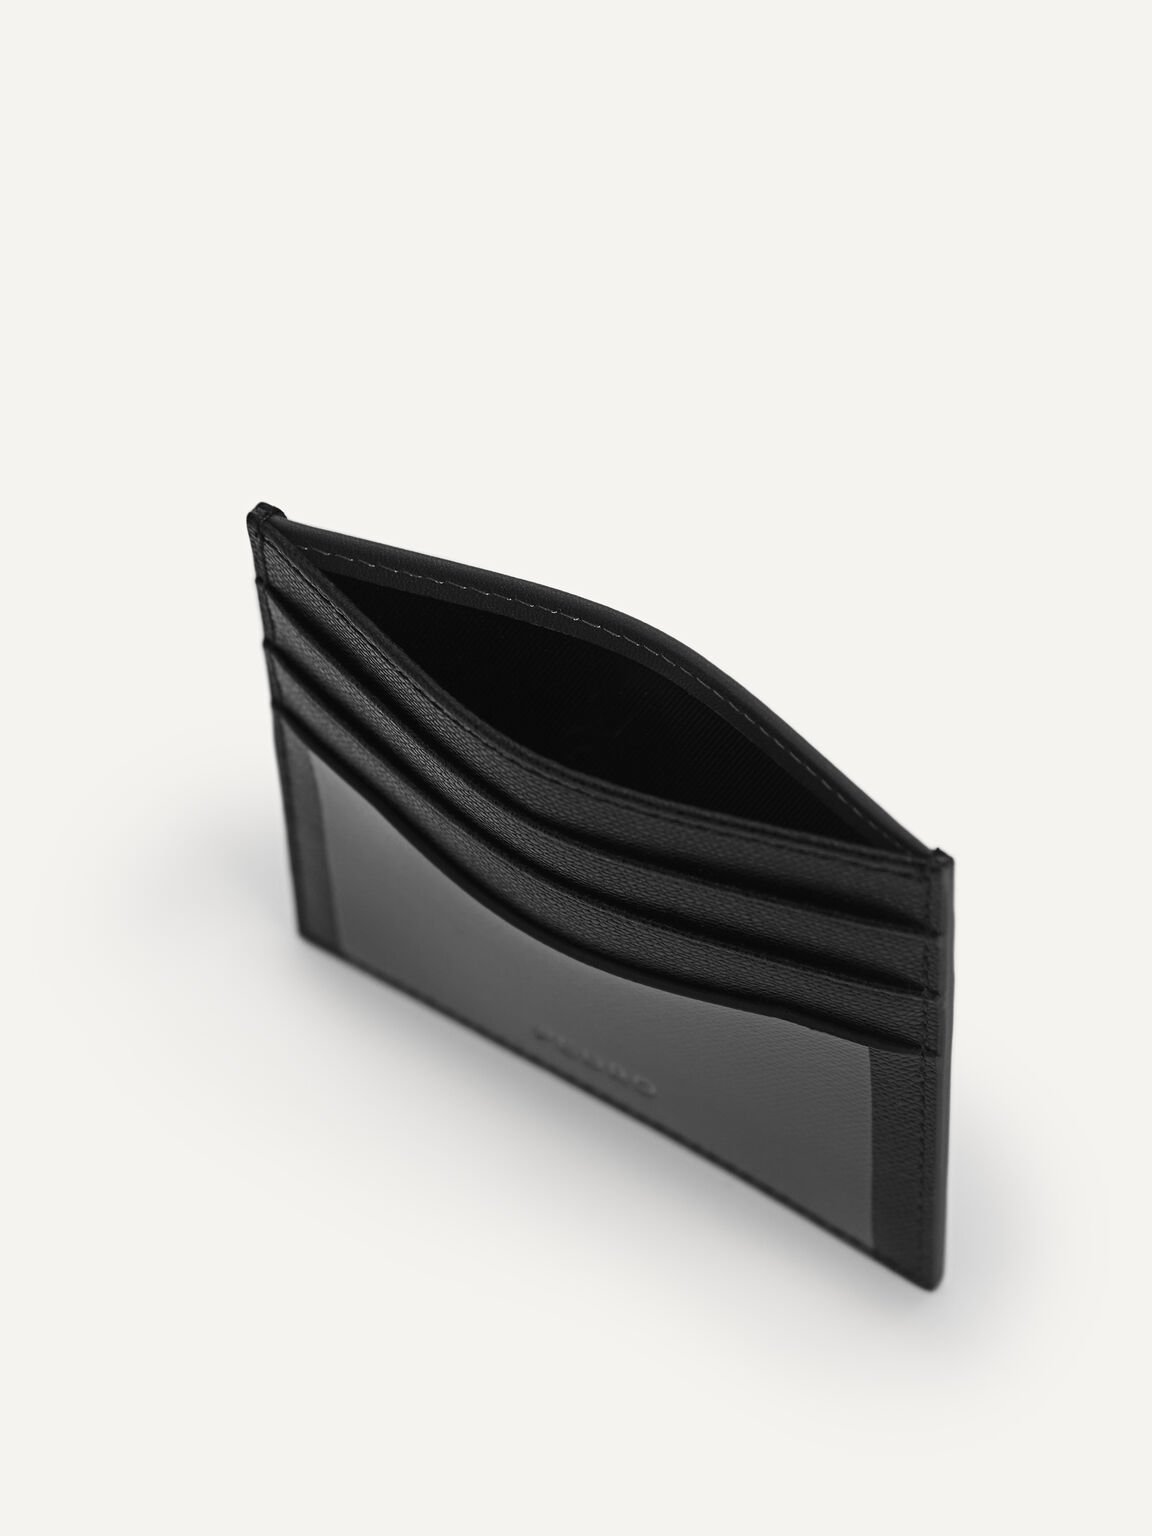 Full-Grain Leather Cardholder, Black